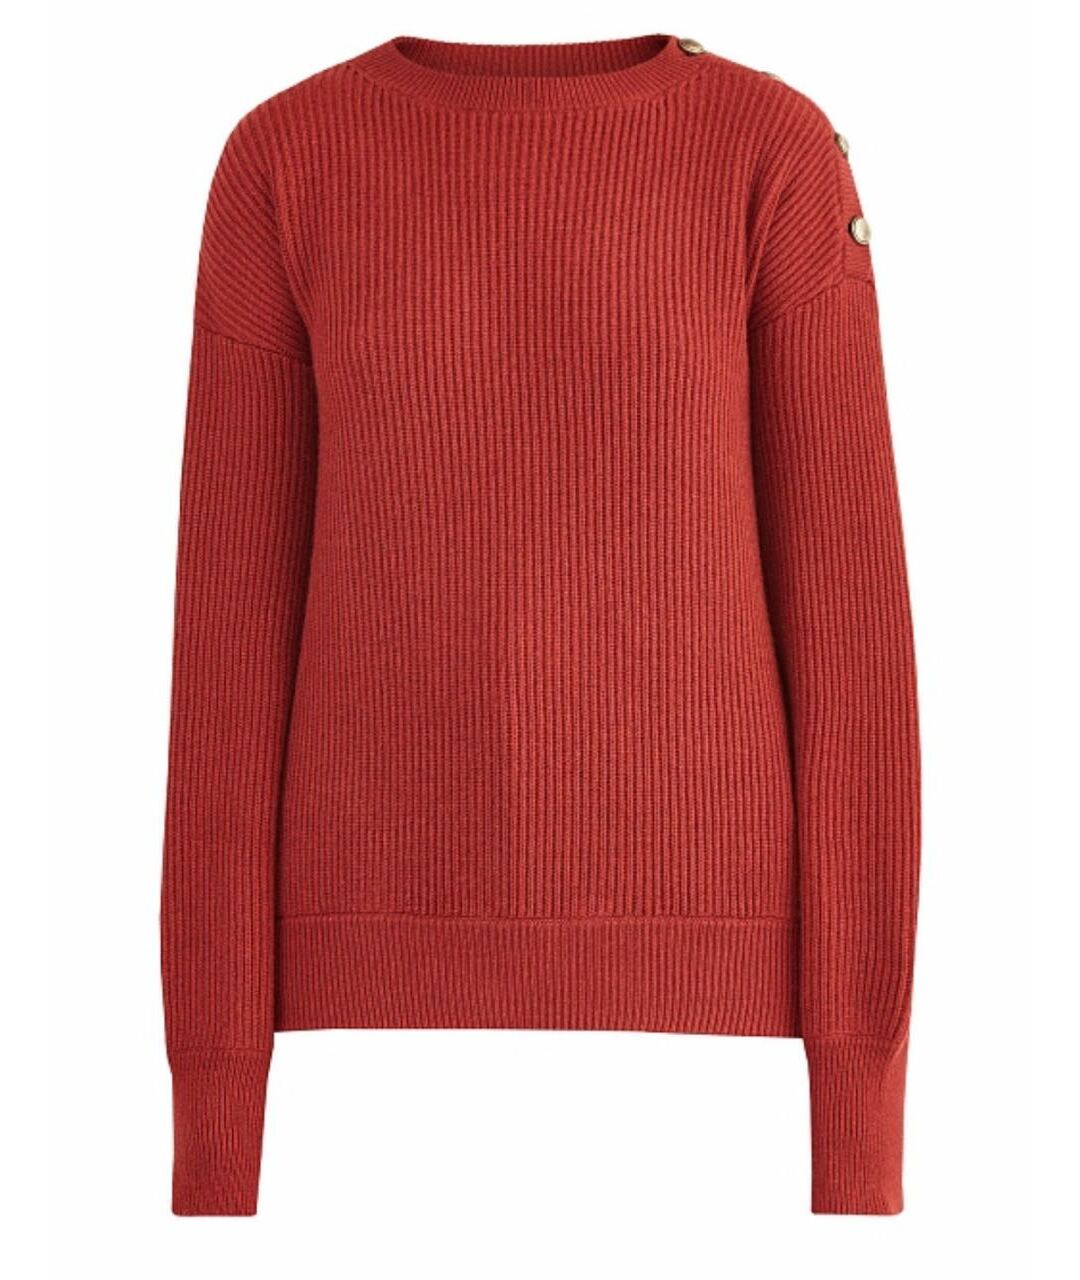 BRUNELLO CUCINELLI Бордовый кашемировый джемпер / свитер, фото 1